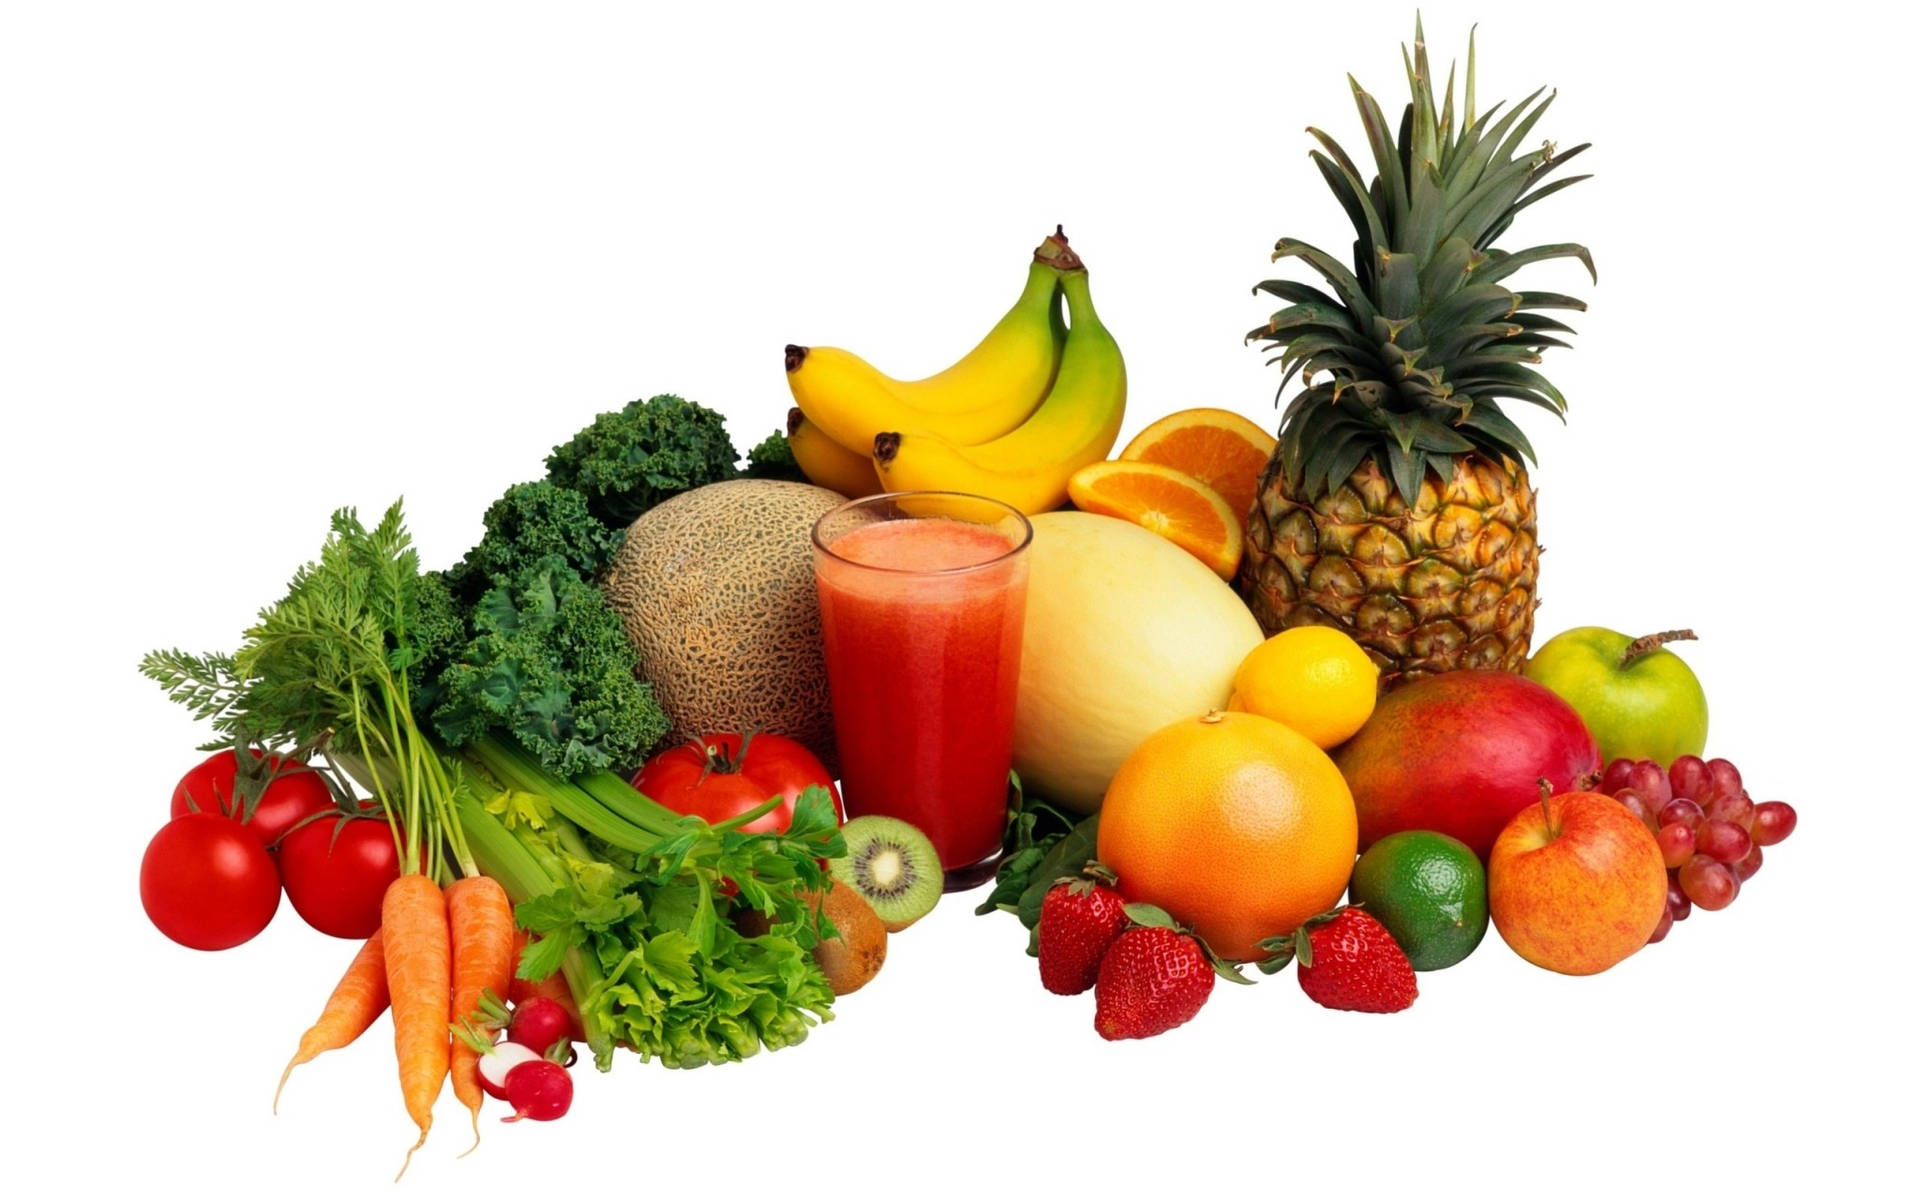 Fruits And Vegetables Food Desktop Background